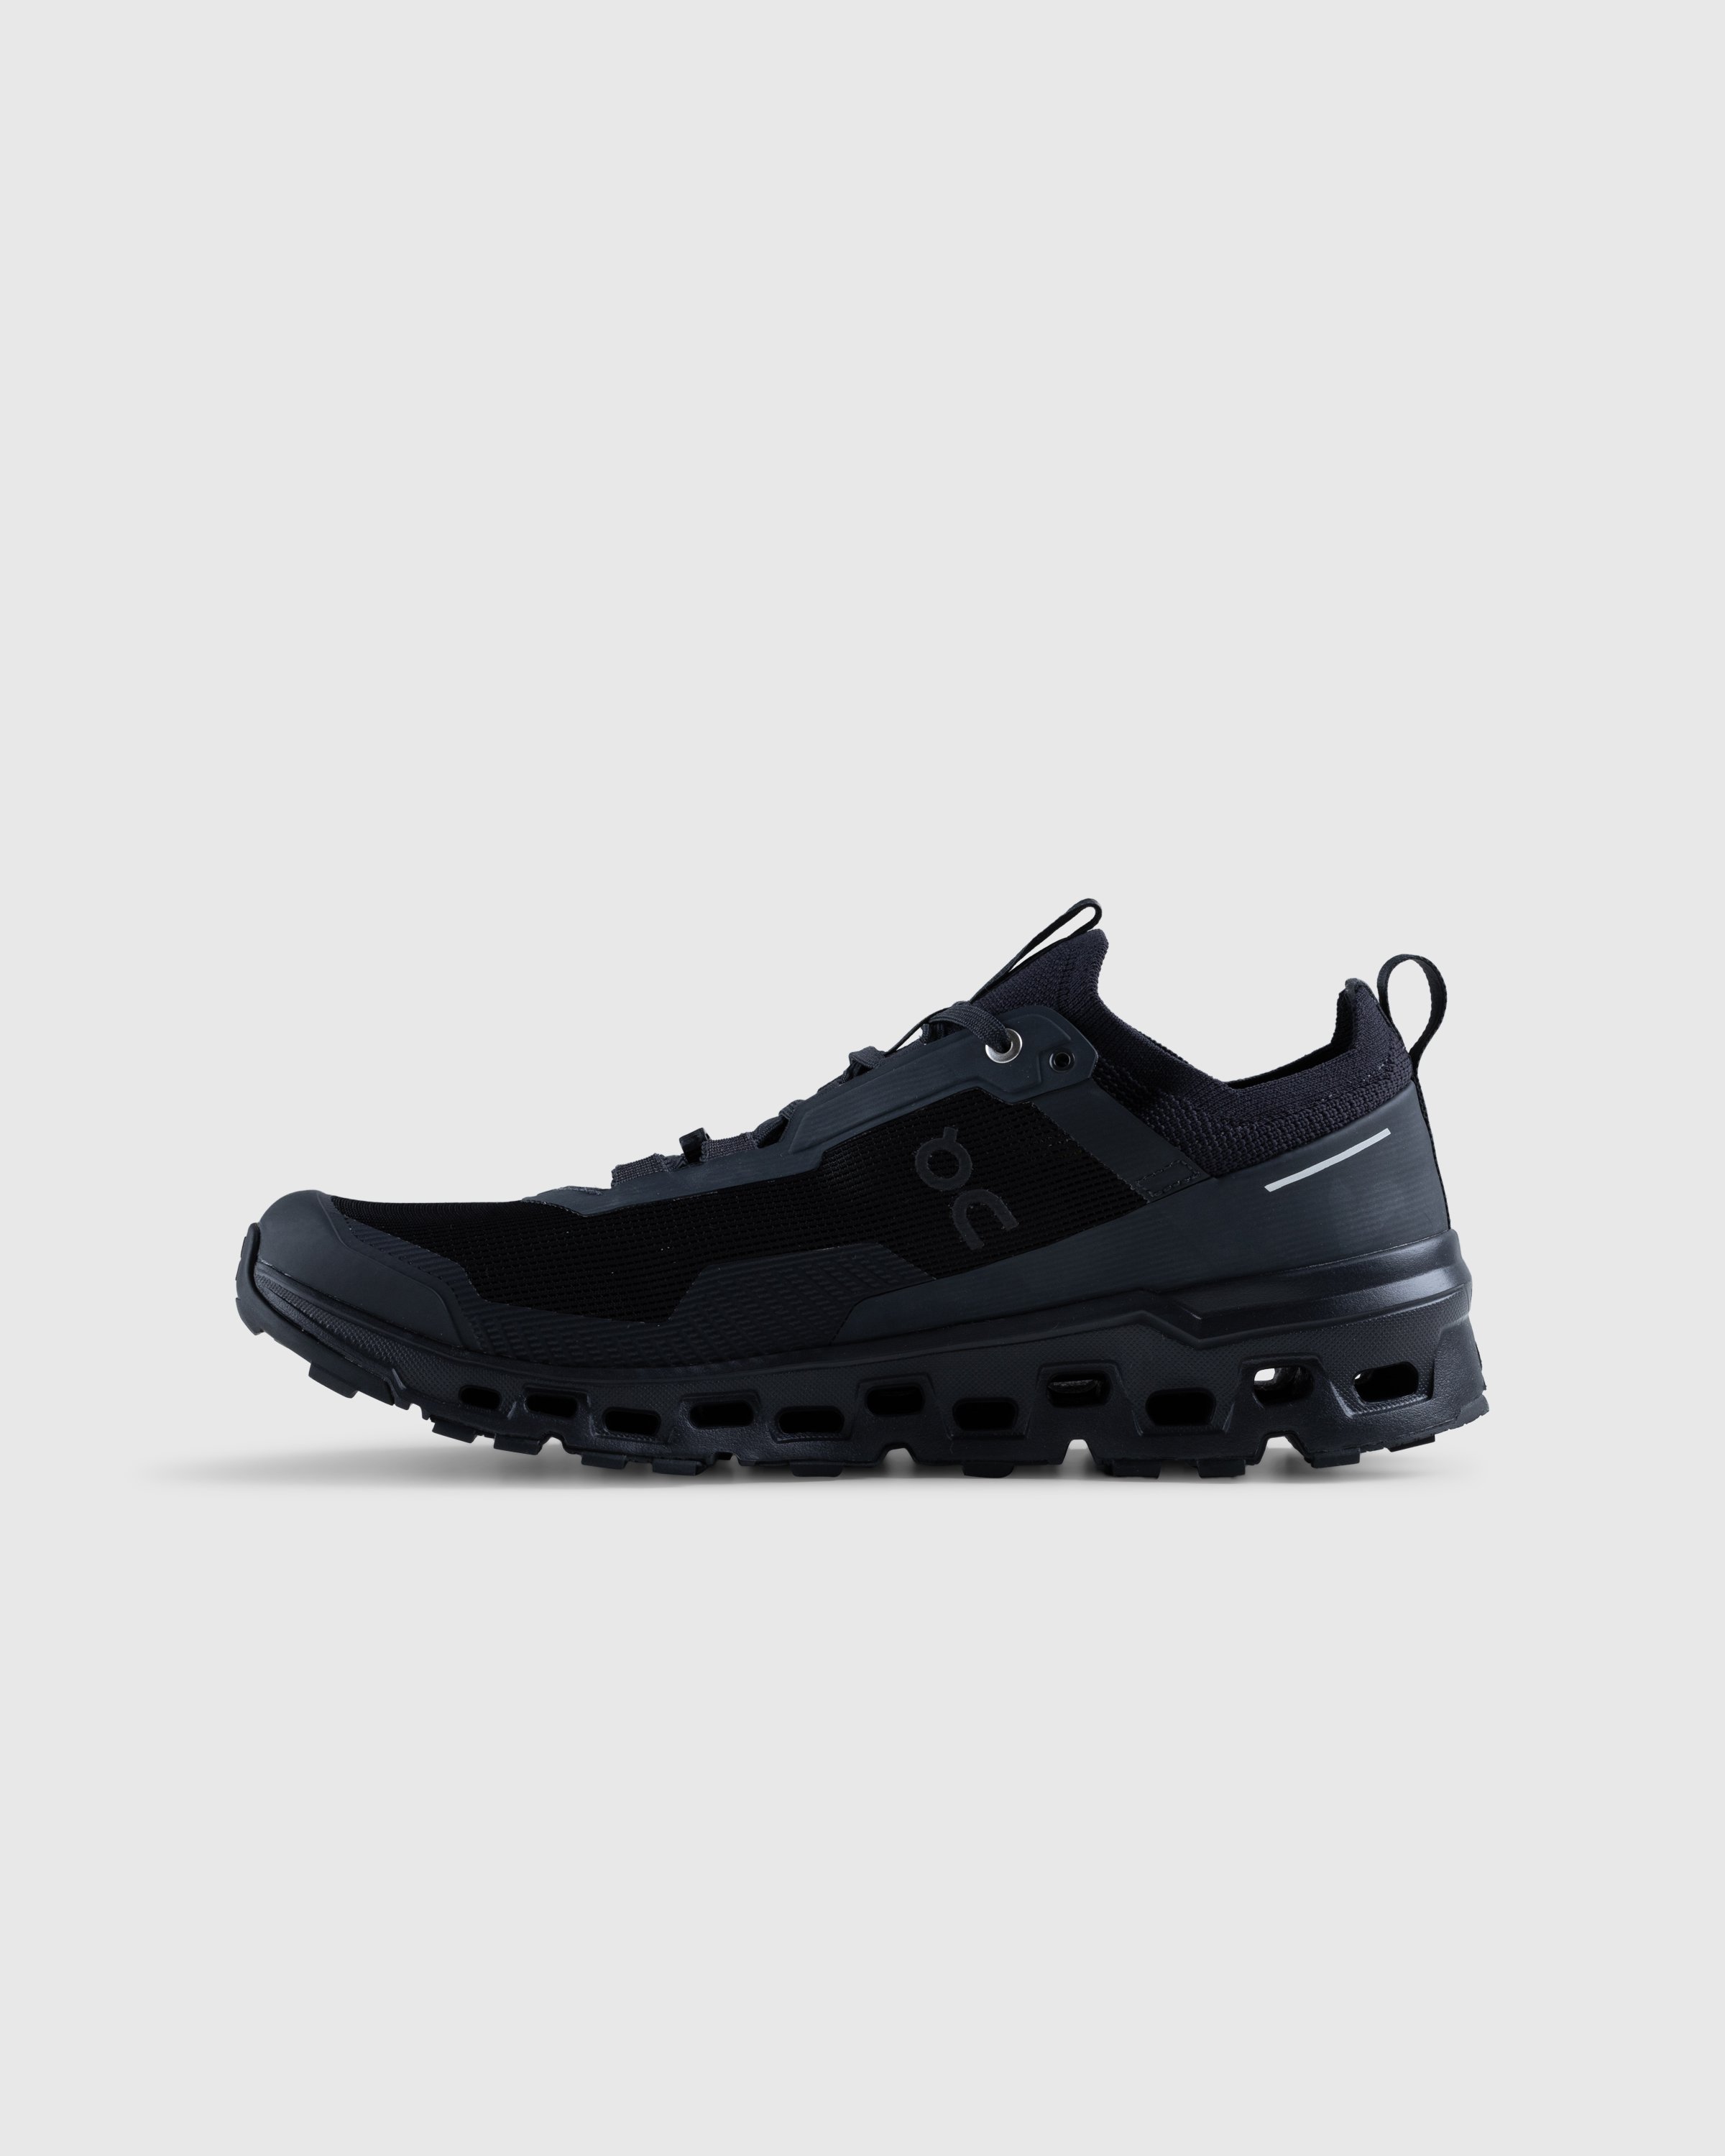 On - Cloudultra 2 Black - Footwear - Black - Image 2